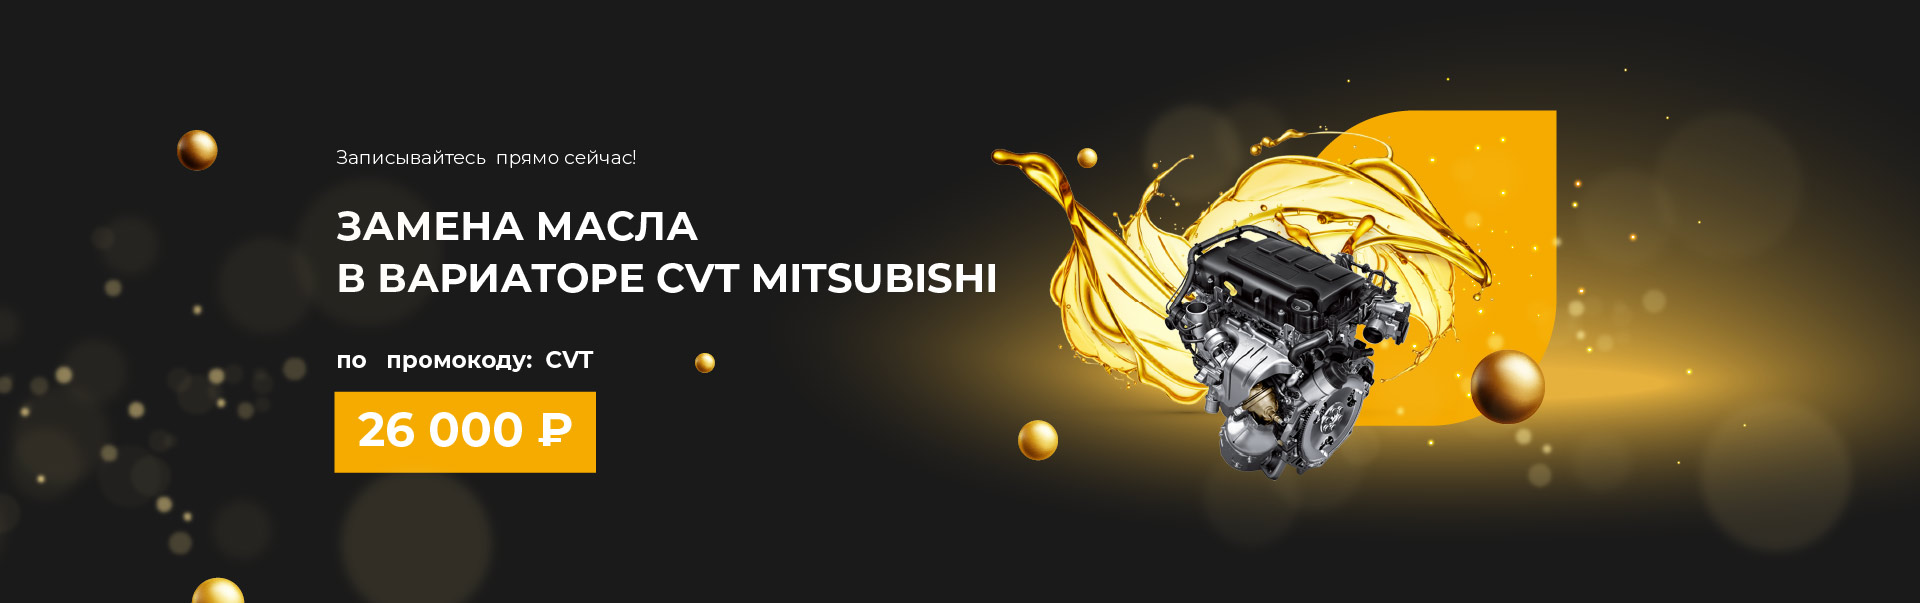 Замена масла в вариаторе CVT Mitsubishi за 26 000р.